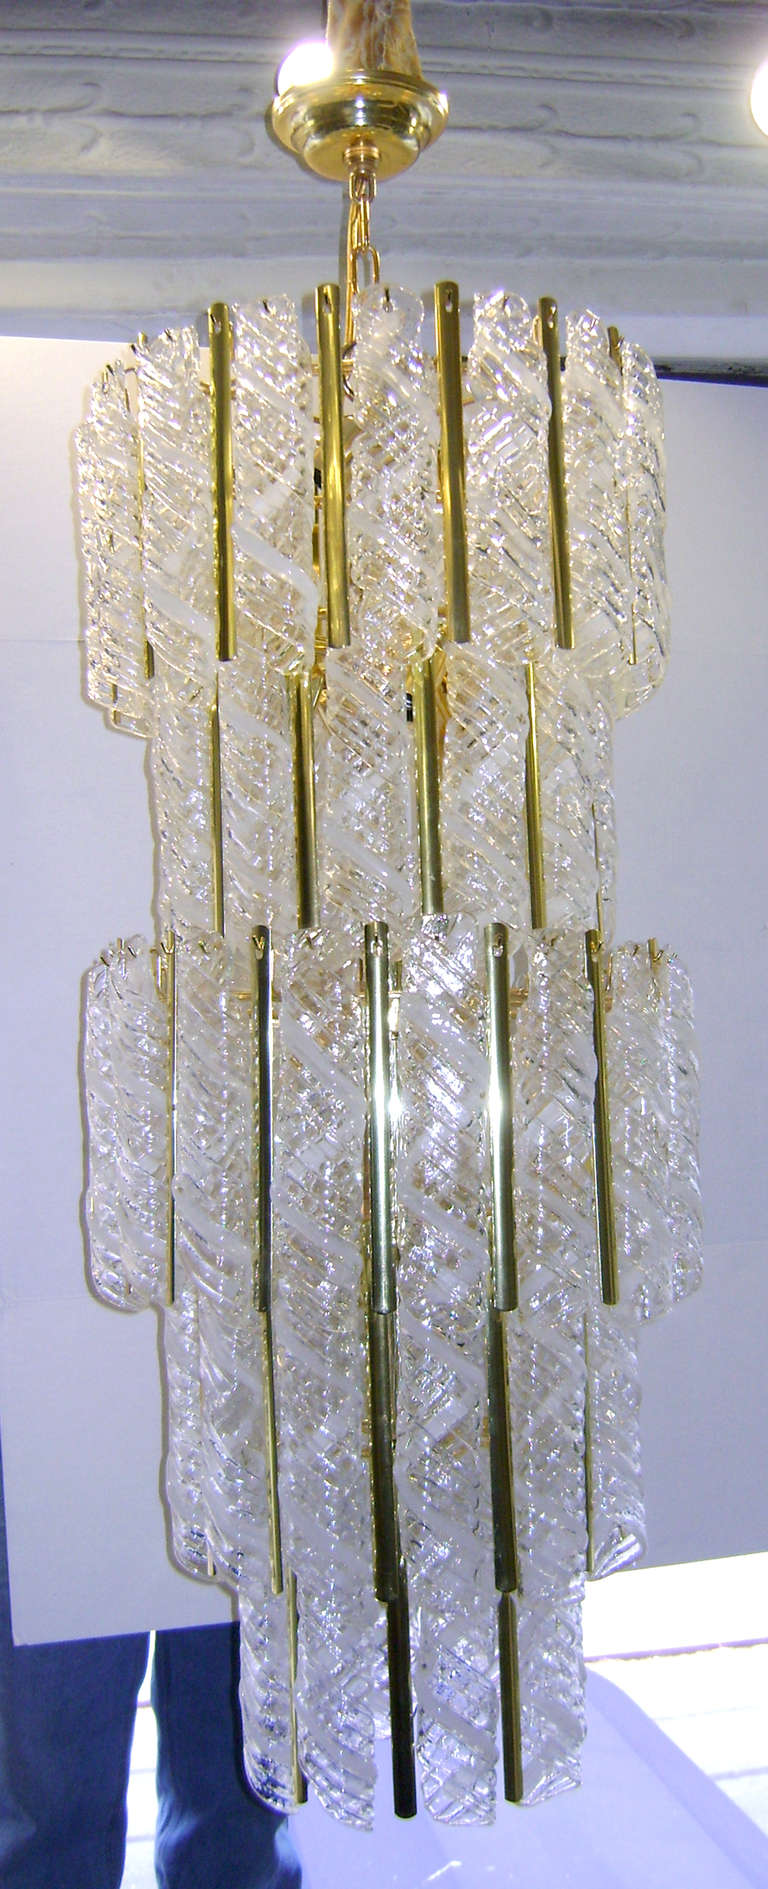 Un lustre italien en verre soufflé datant d'environ 1960 avec 16 lumières intérieures. Chaque pièce individuelle en verre présente un design virevoltant et un motif clair et blanc.

Mesures :
Hauteur minimale : 44